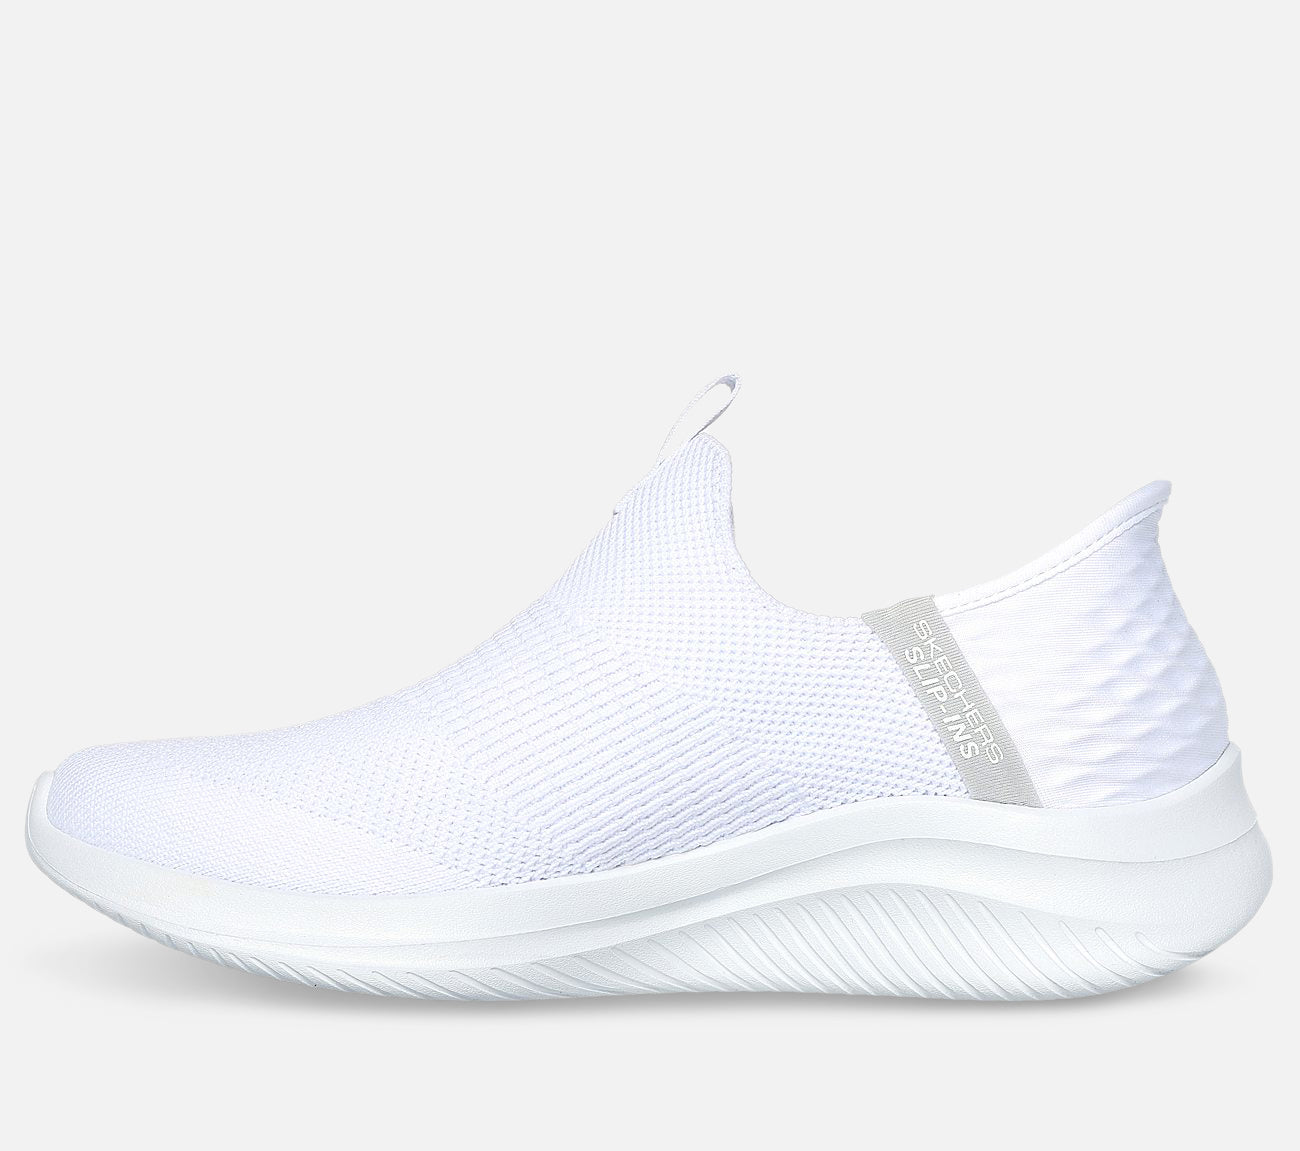 Slip-ins: Ultra Flex 3.0 - Cozy Streak Shoe Skechers